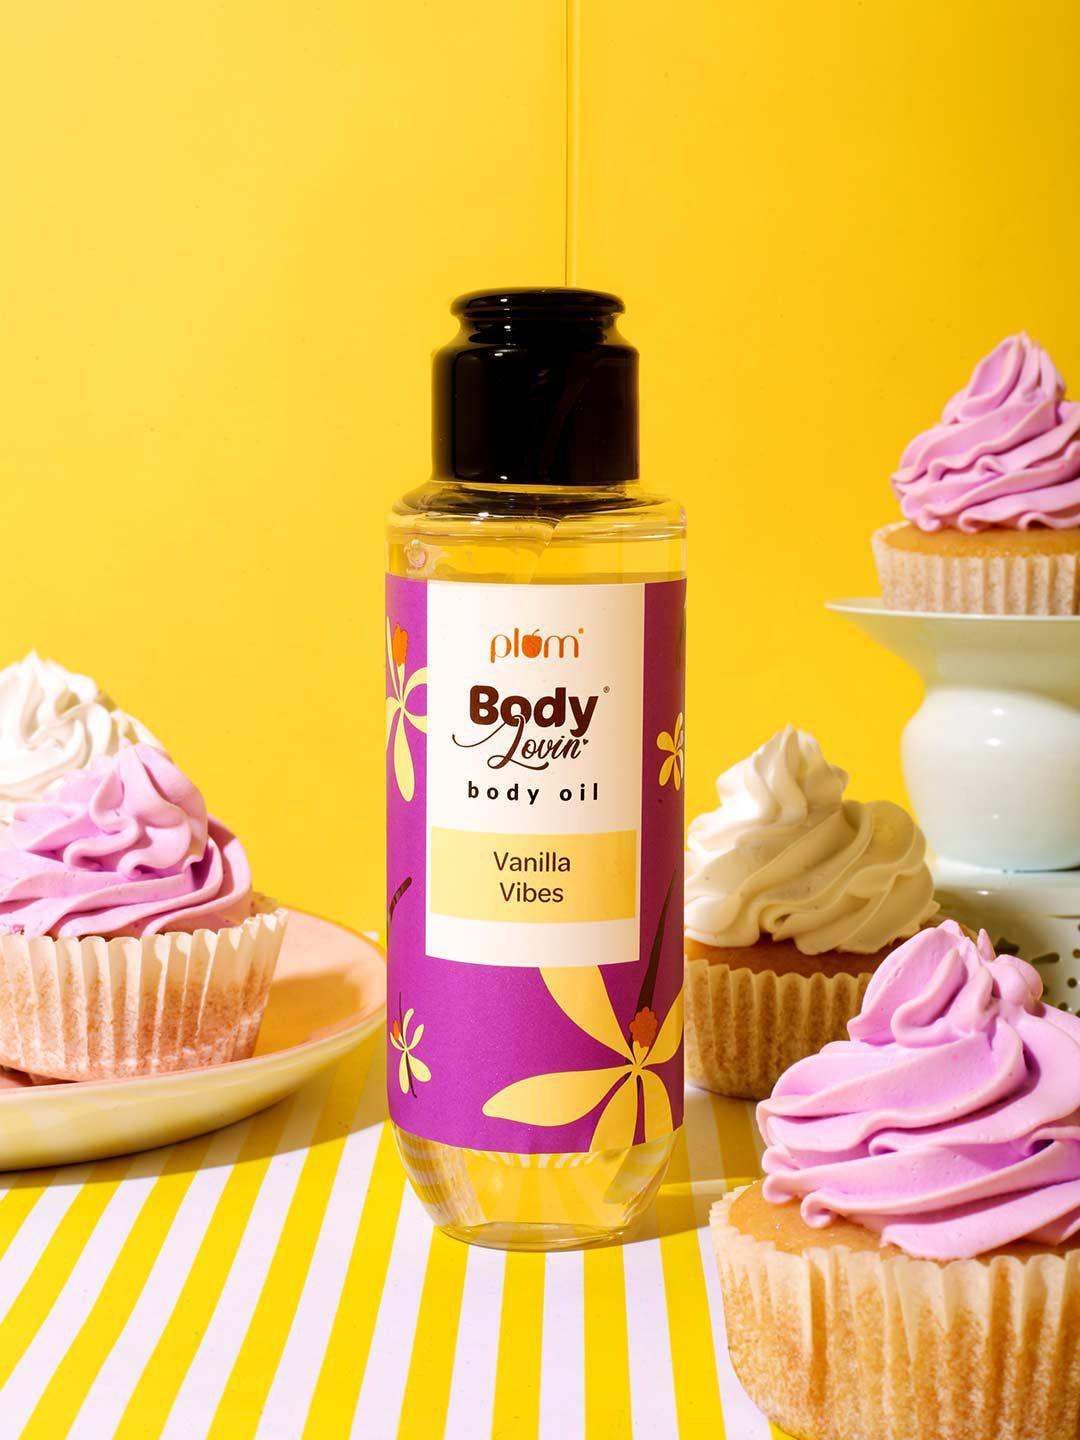 plum bodylovin' vanilla vibes body oil 100ml